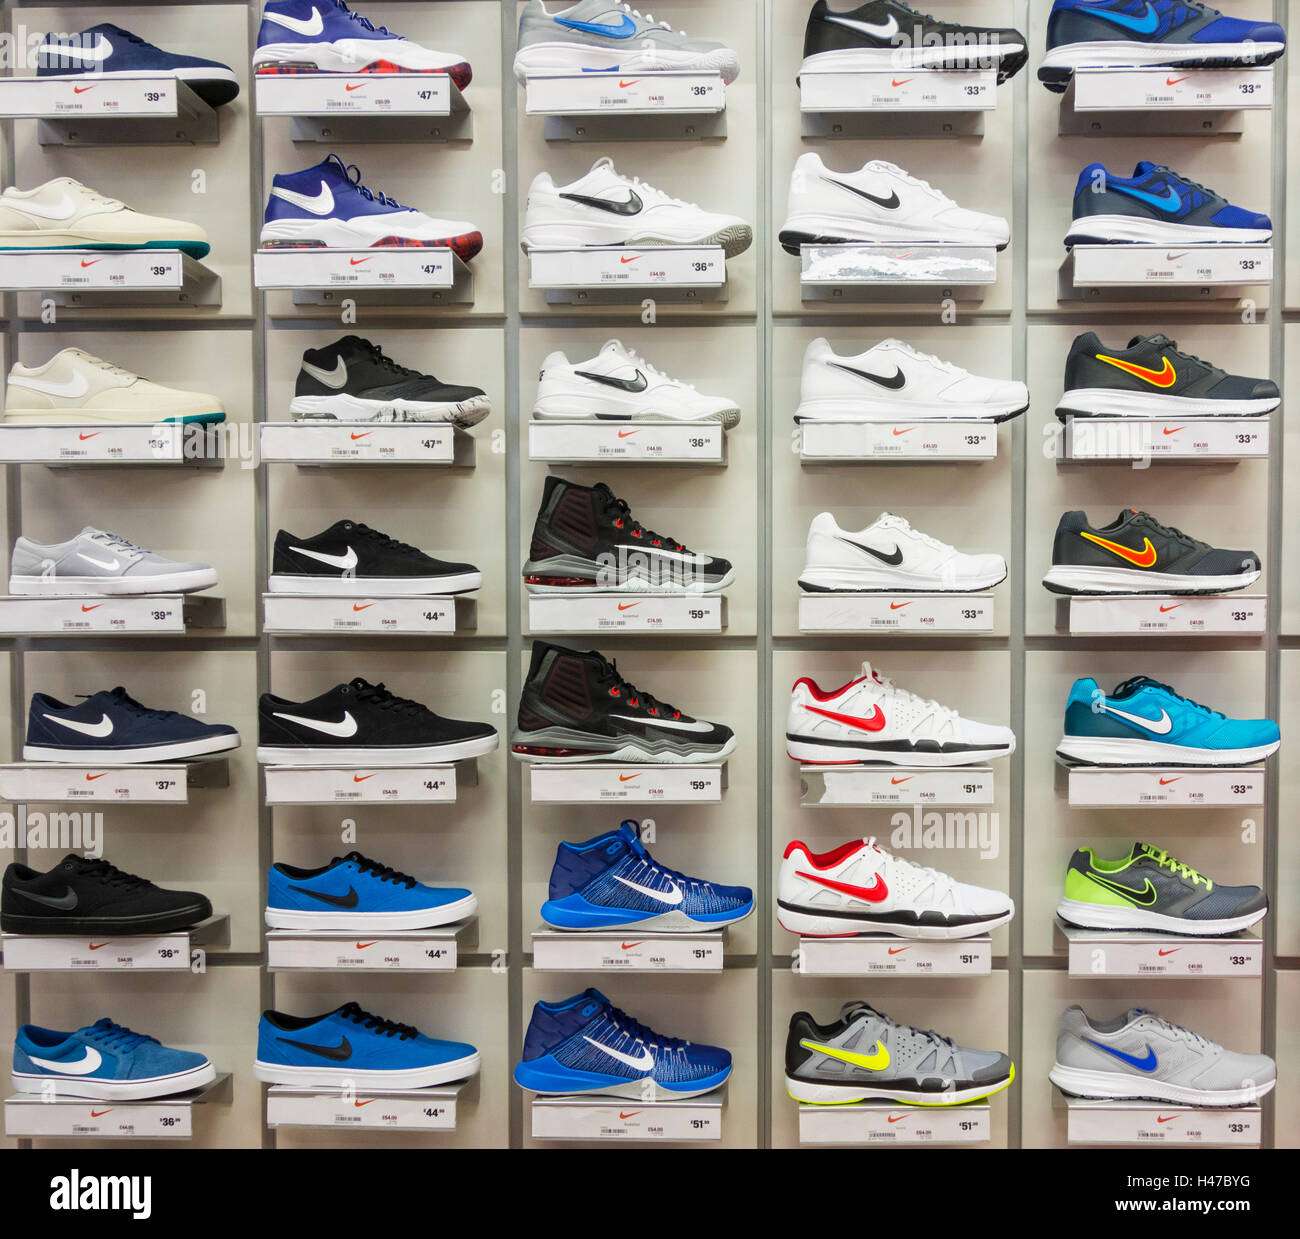 Vervloekt Het eens zijn met Missionaris Nike footwear display in Sports Direct store. UK Stock Photo - Alamy